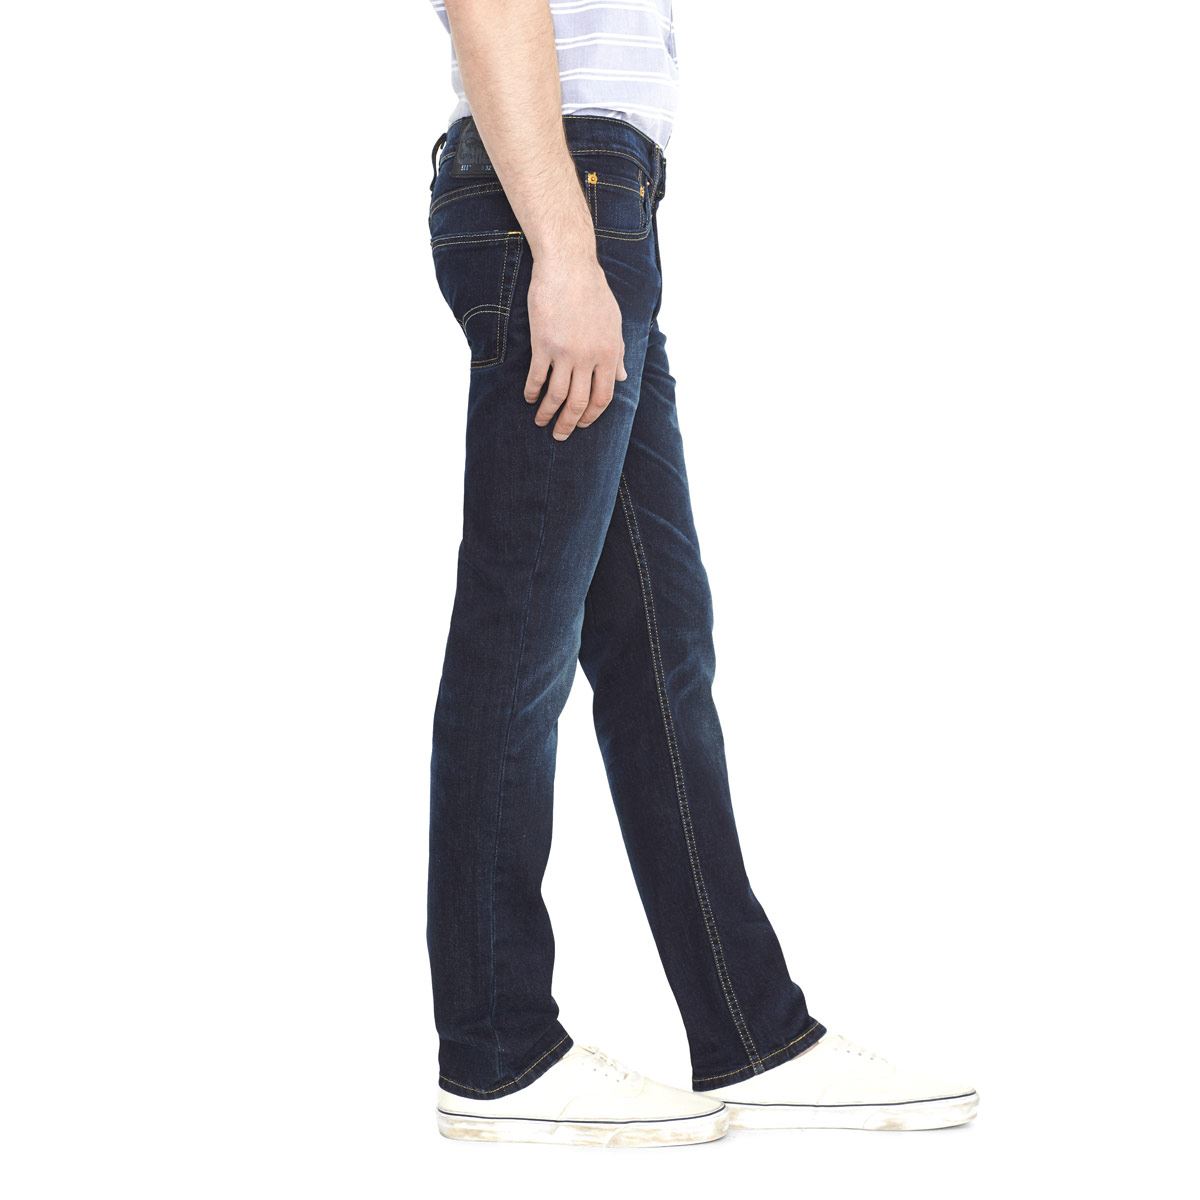 Jeans Levi's 511™ Slim Fit Jeans 30x30